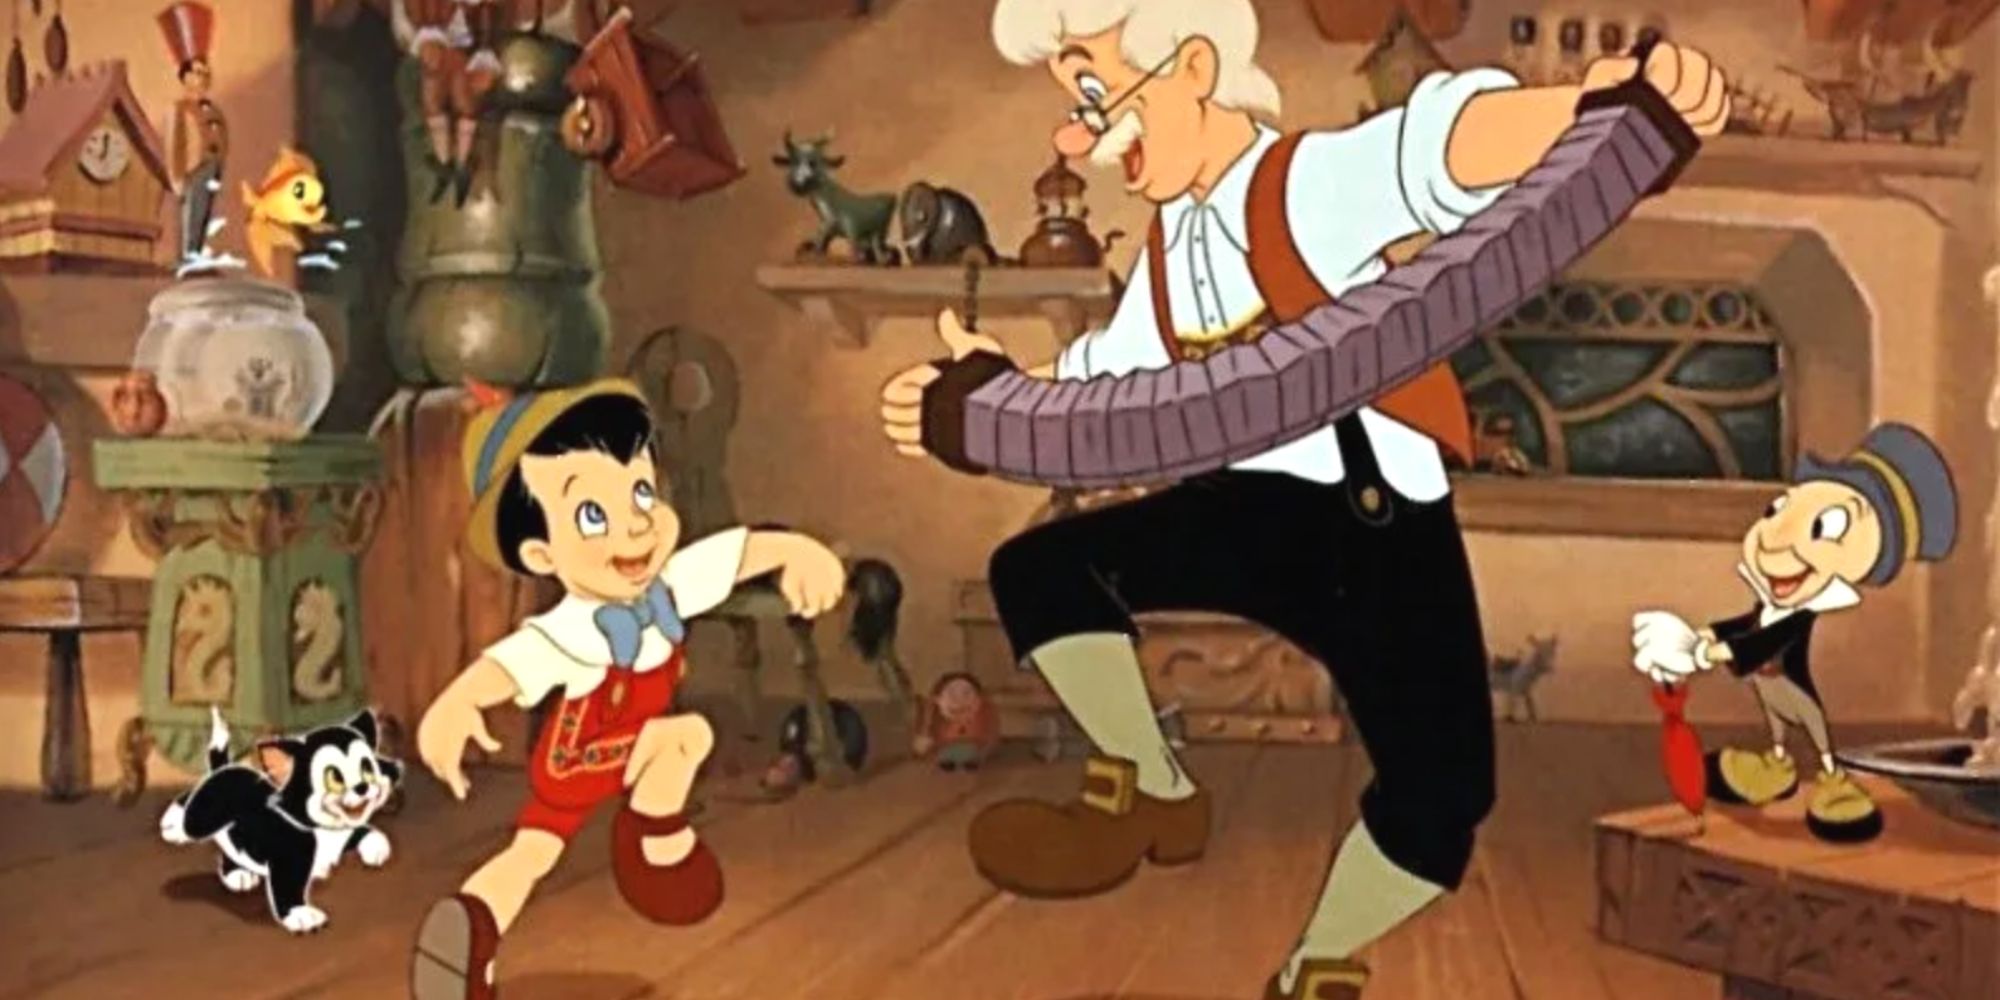 Pinocchio and Geppetto in Pinocchio